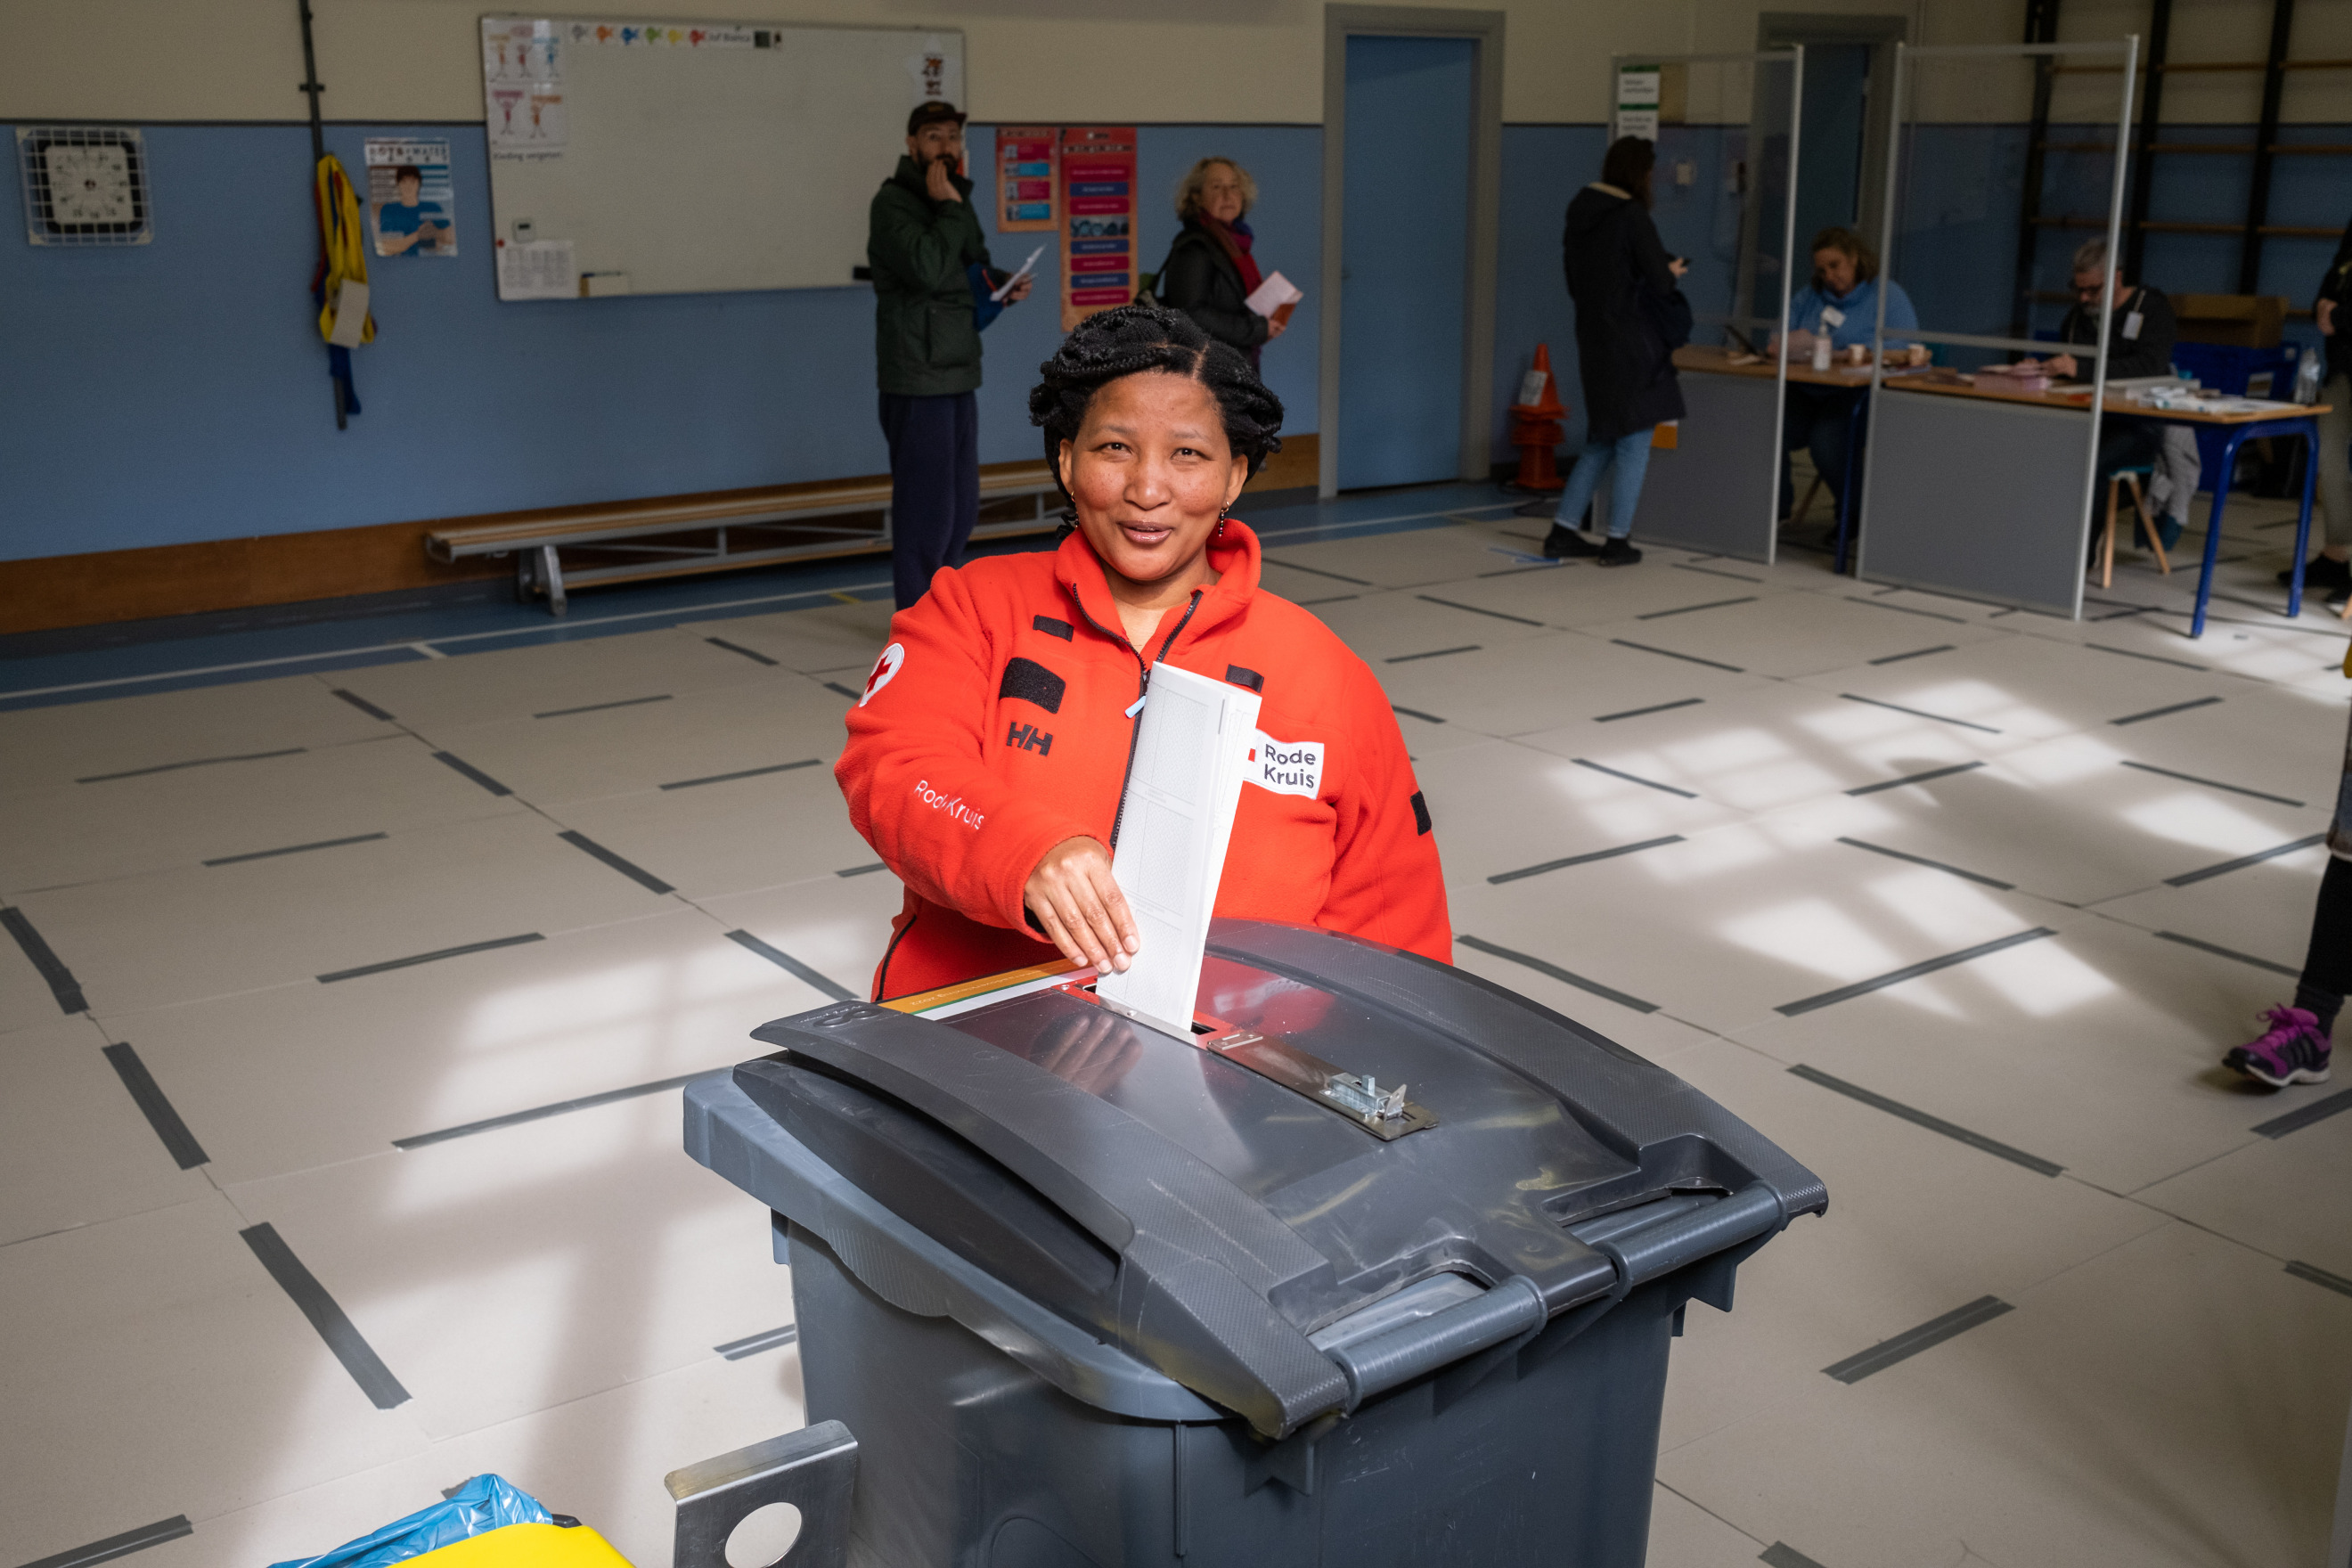 Op de foto doet een mevrouw in een rode jas een stembiljet in de stembus. Op de achtergrond zien we mensen in de rij staan voor een tafel met stembureauleden. De stembureauleden controleren de stempas van mensen die willen stemmen.